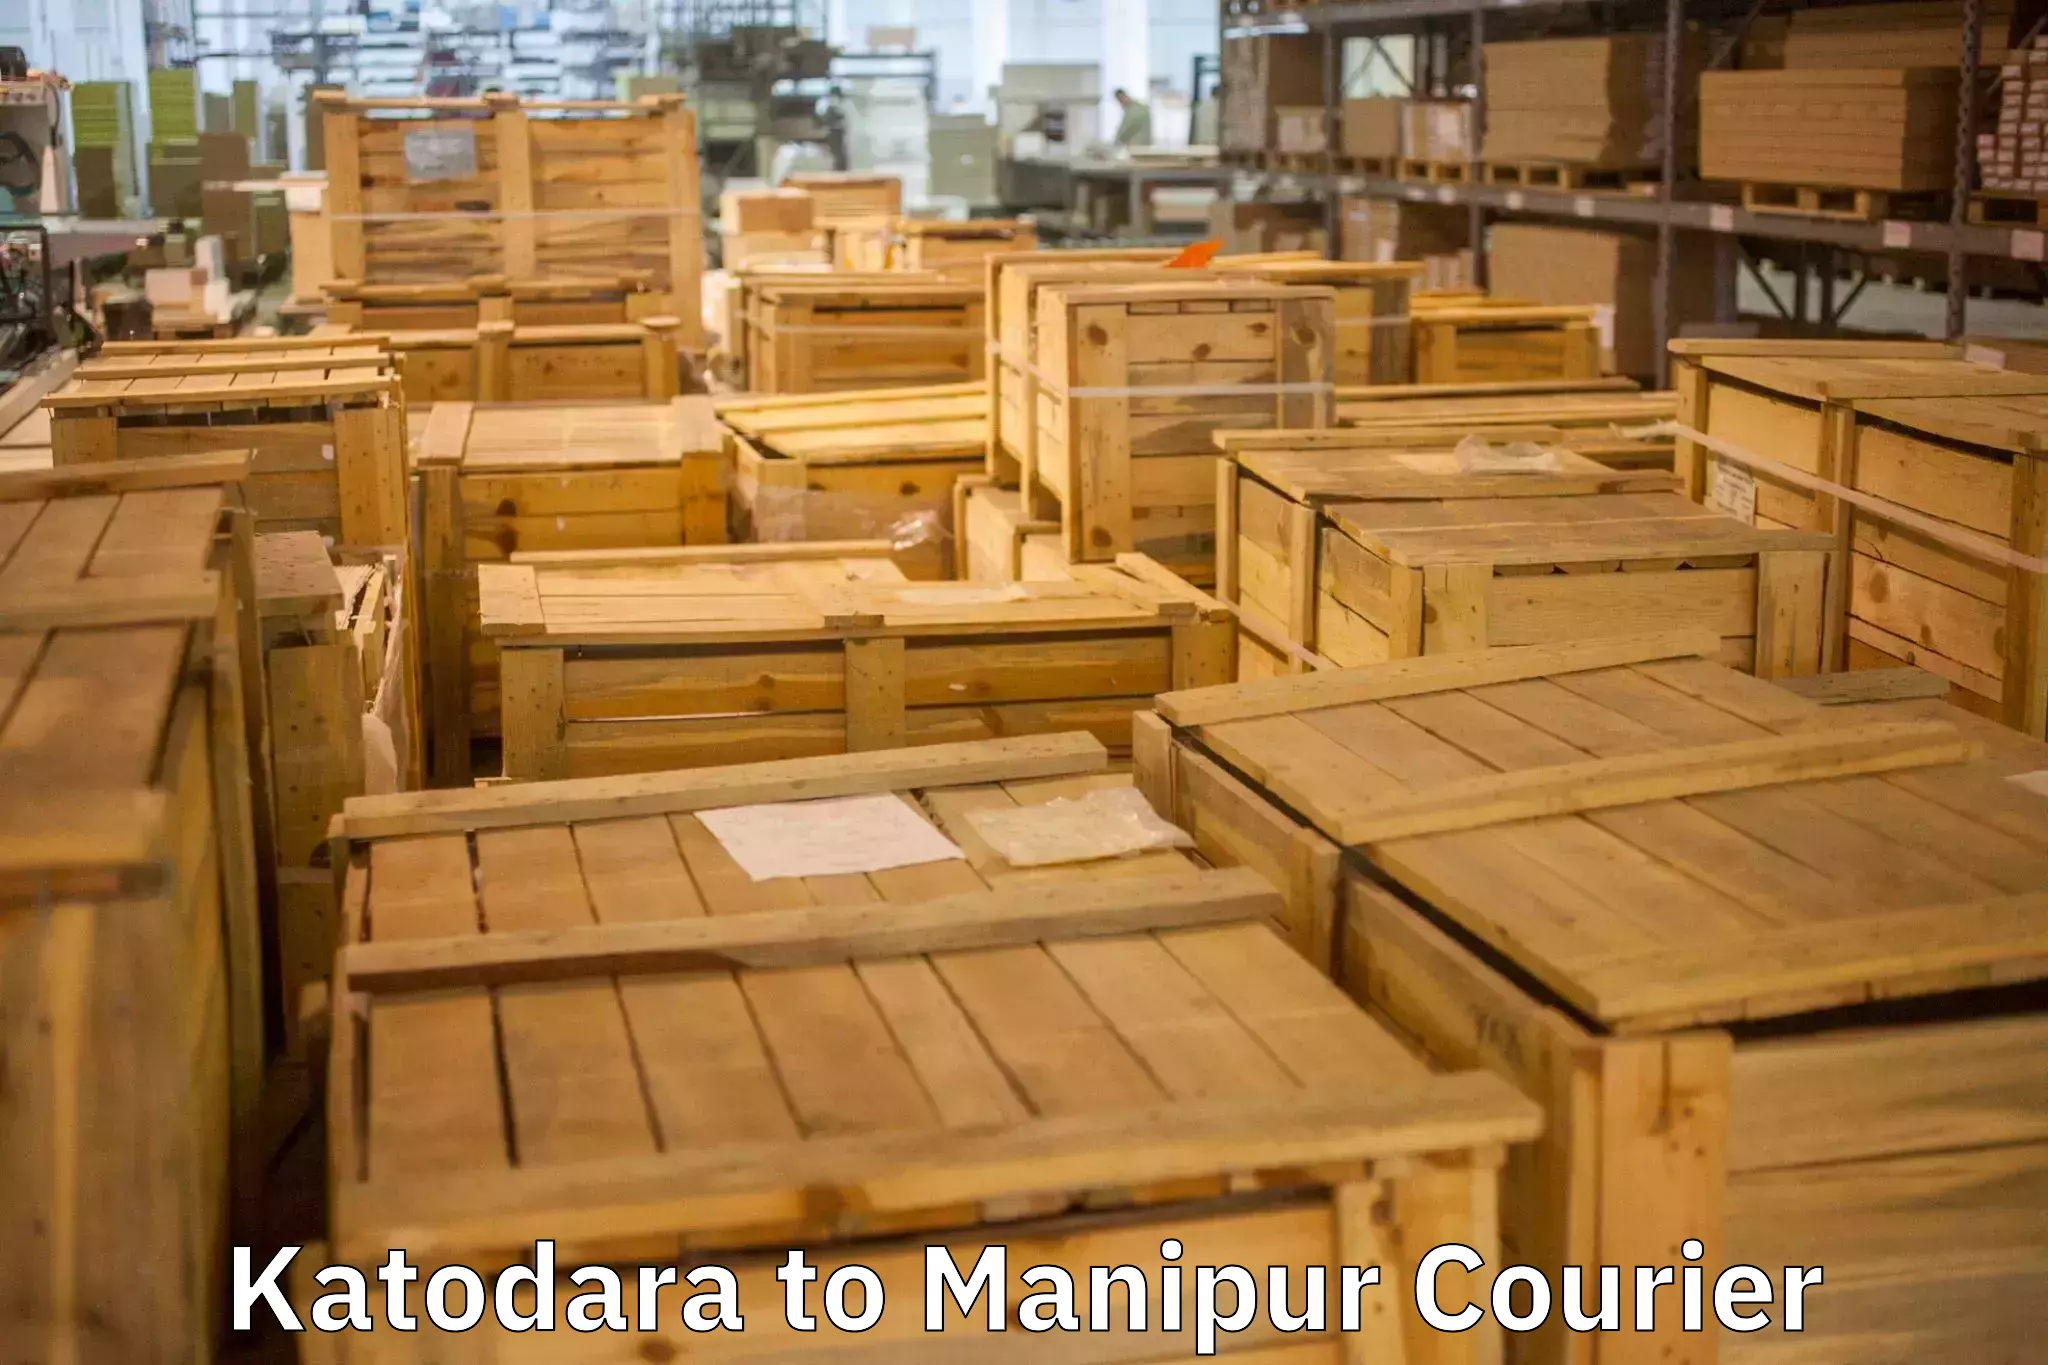 Furniture moving plans Katodara to Manipur